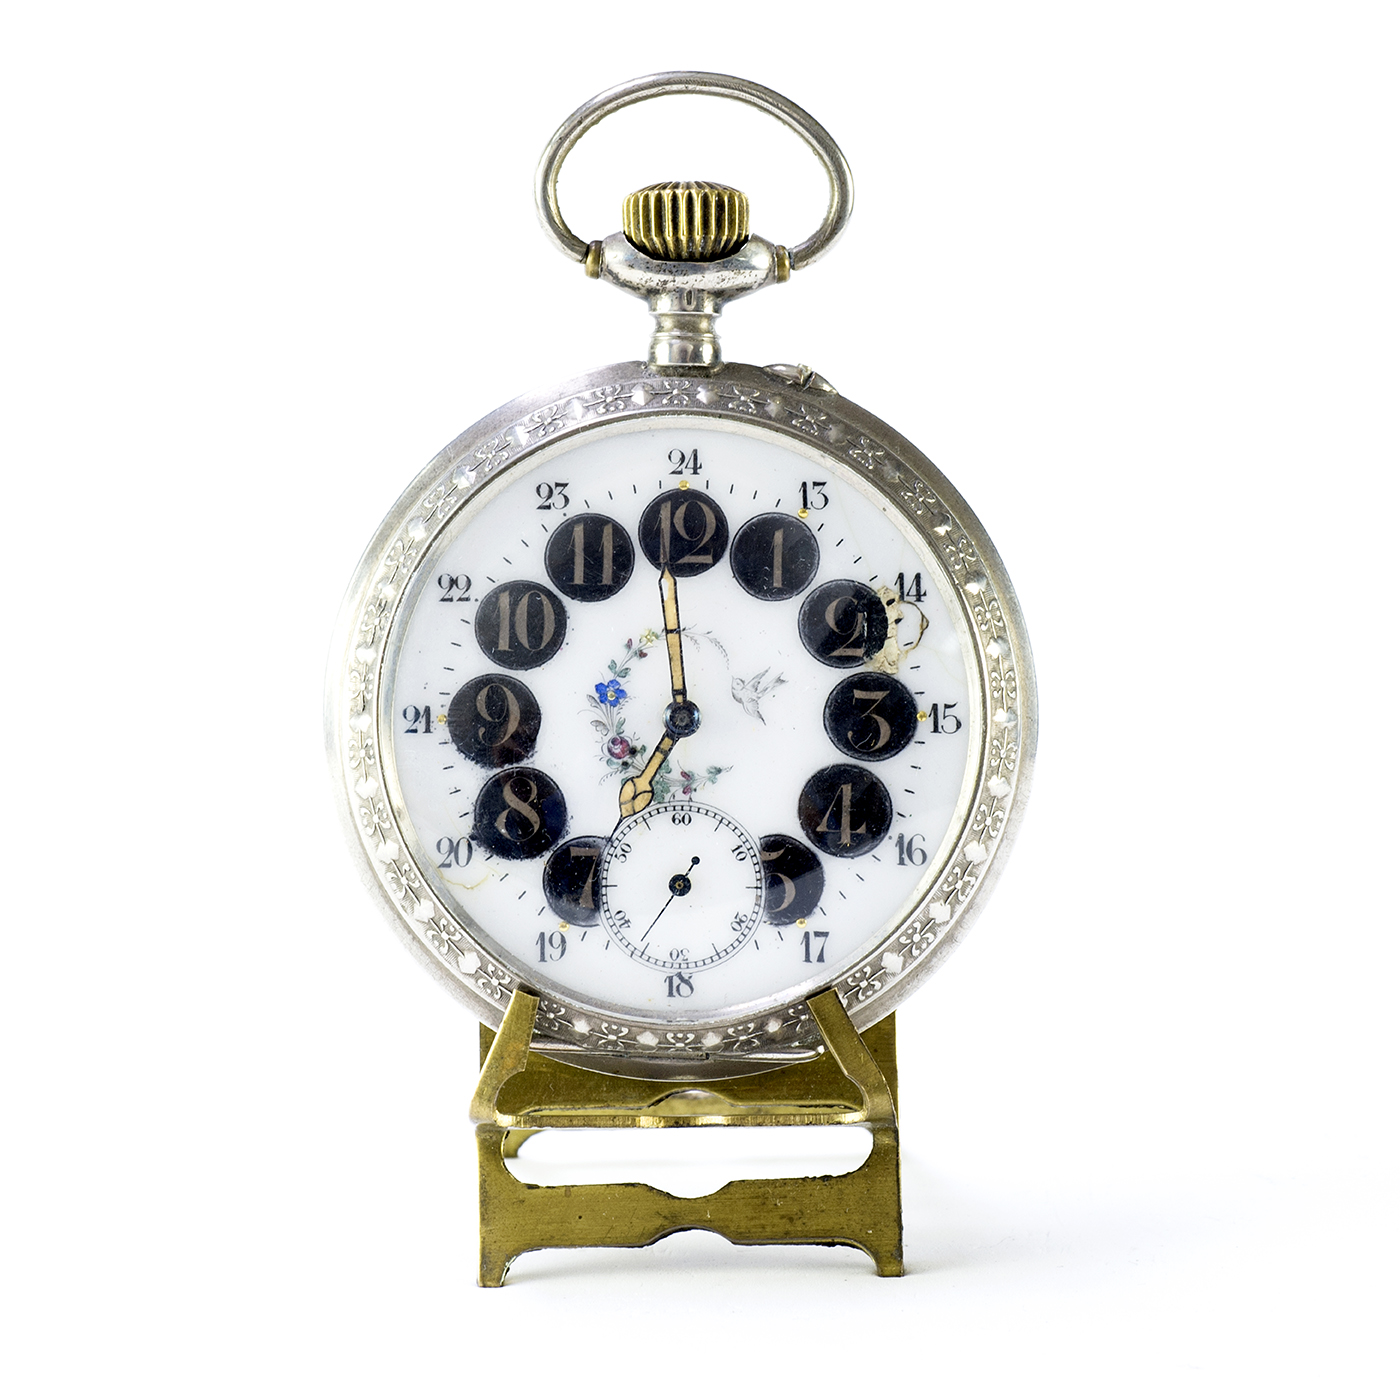 Reloj de Bolsillo, lepine y remontoir, gran tamaño. Suiza, ca. 1890